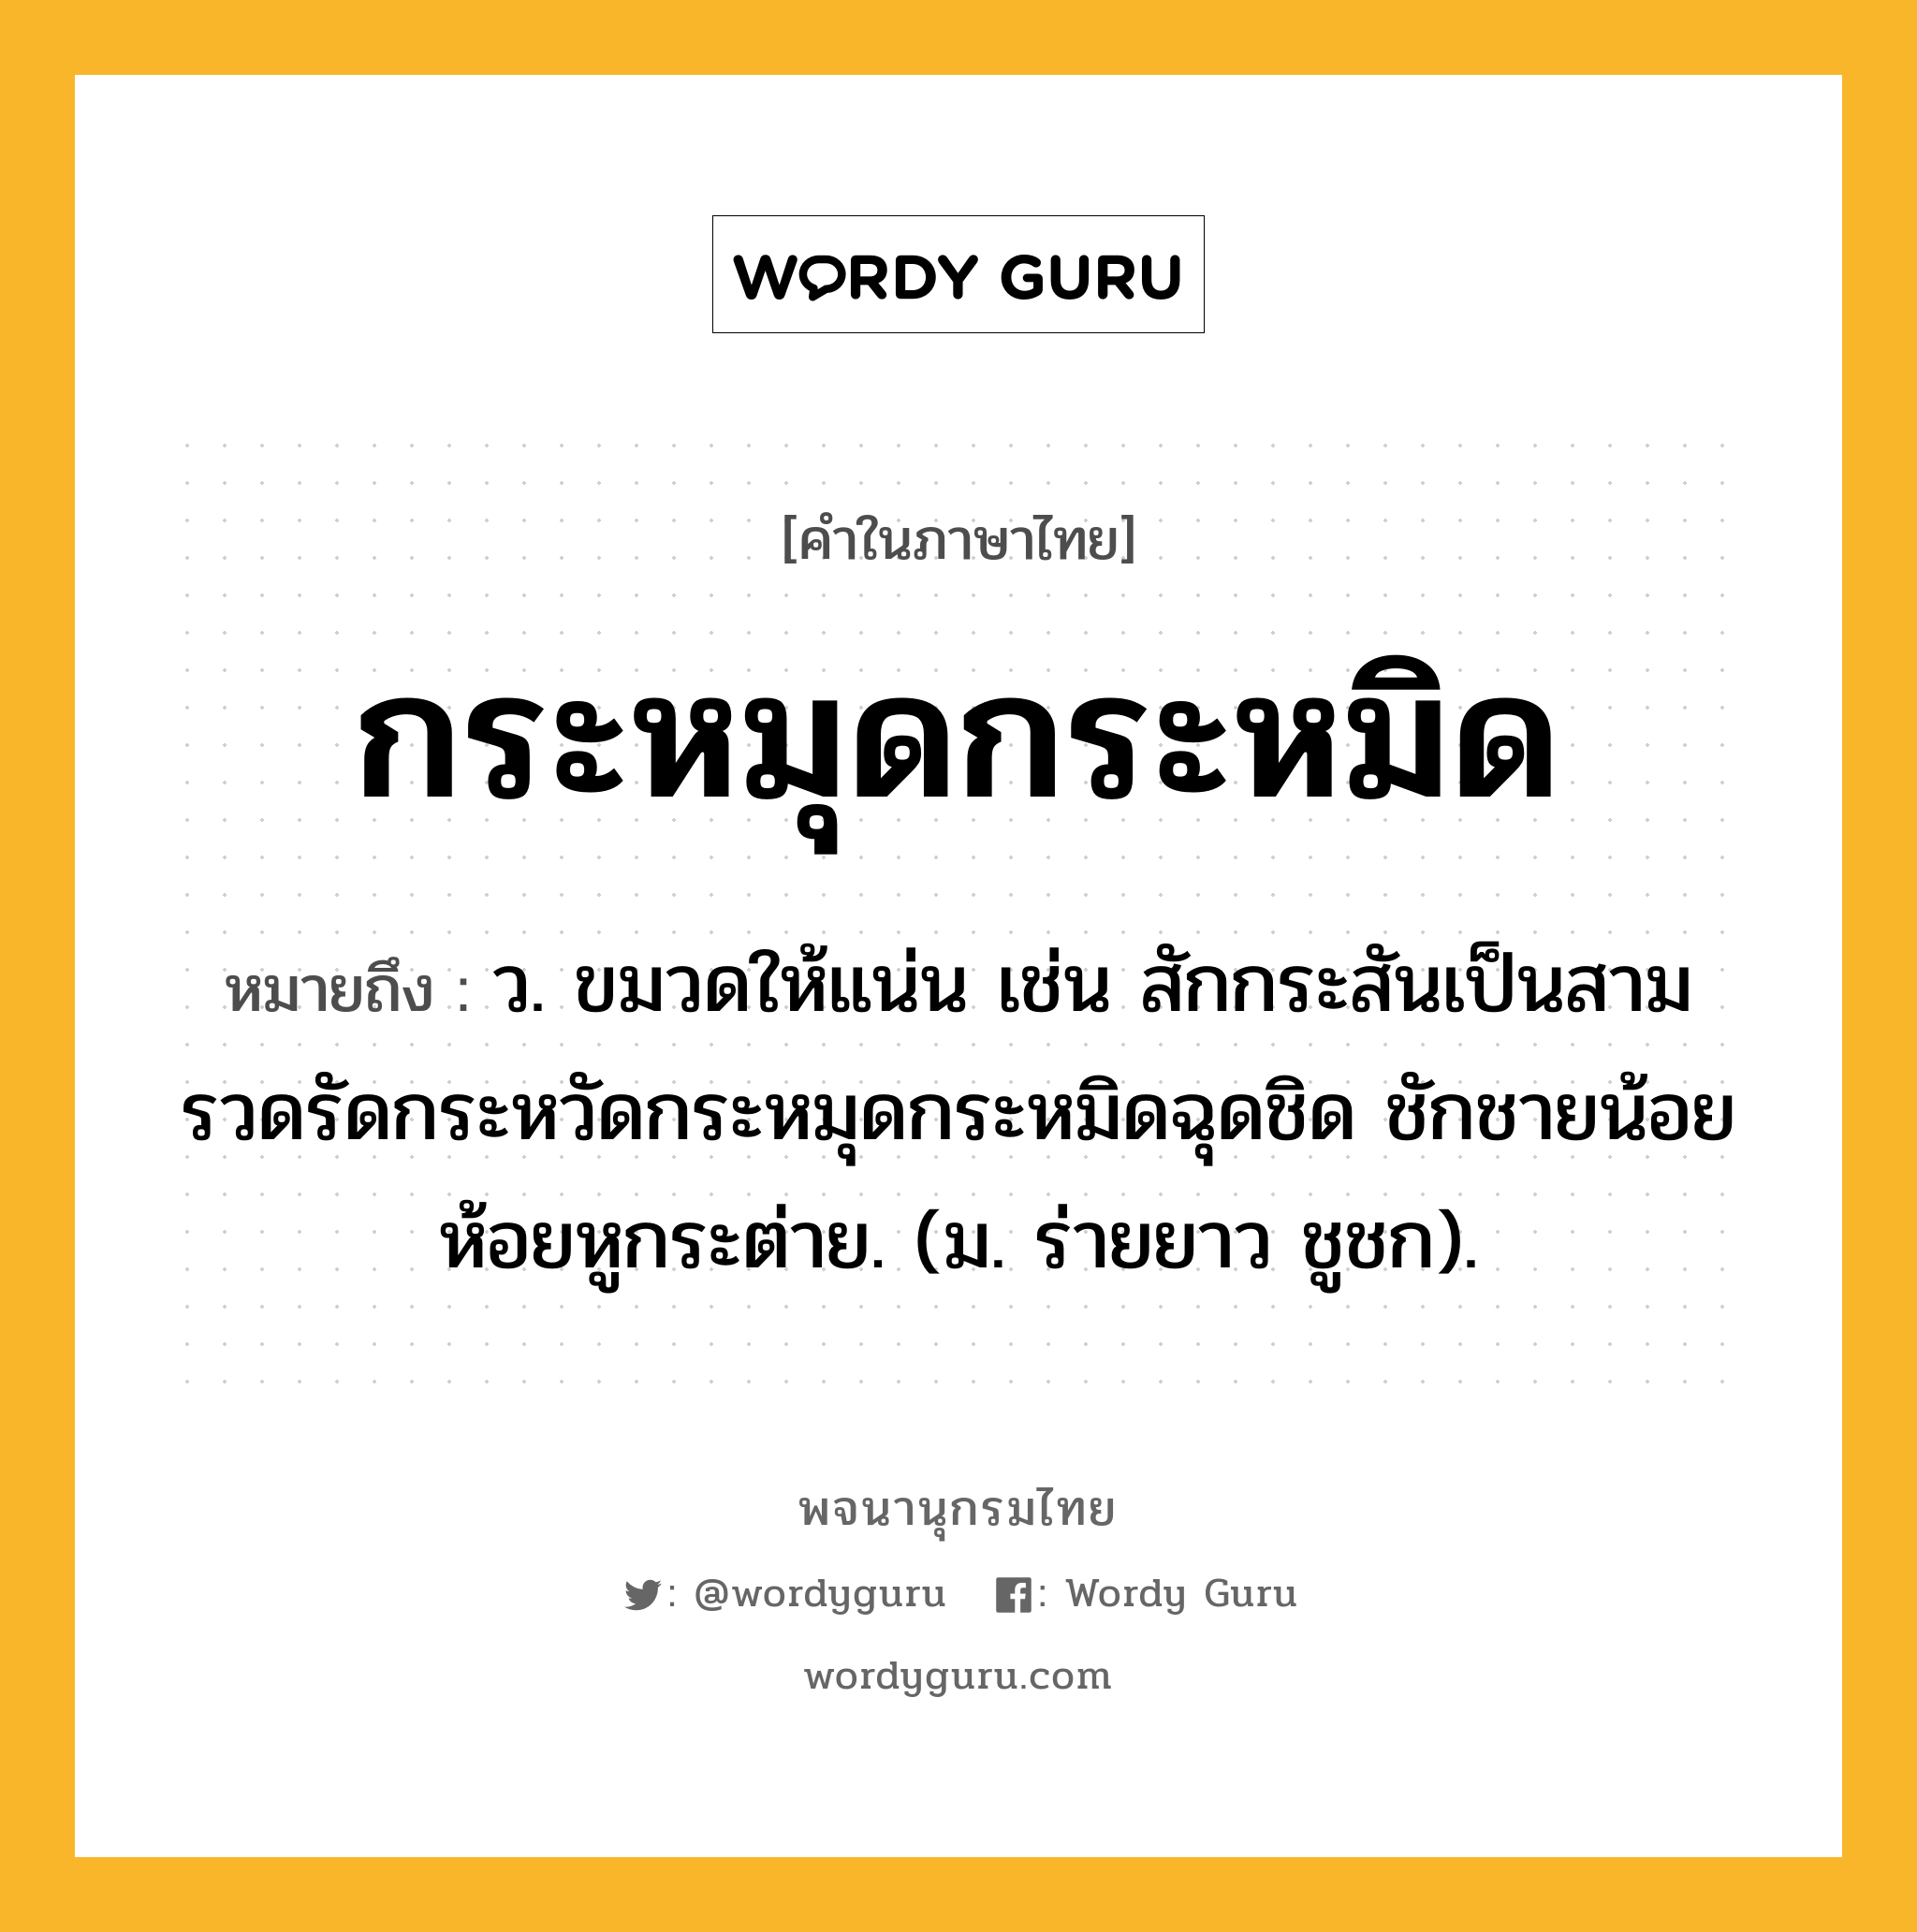 กระหมุดกระหมิด หมายถึงอะไร?, คำในภาษาไทย กระหมุดกระหมิด หมายถึง ว. ขมวดให้แน่น เช่น สักกระสันเป็นสามรวดรัดกระหวัดกระหมุดกระหมิดฉุดชิด ชักชายน้อยห้อยหูกระต่าย. (ม. ร่ายยาว ชูชก).